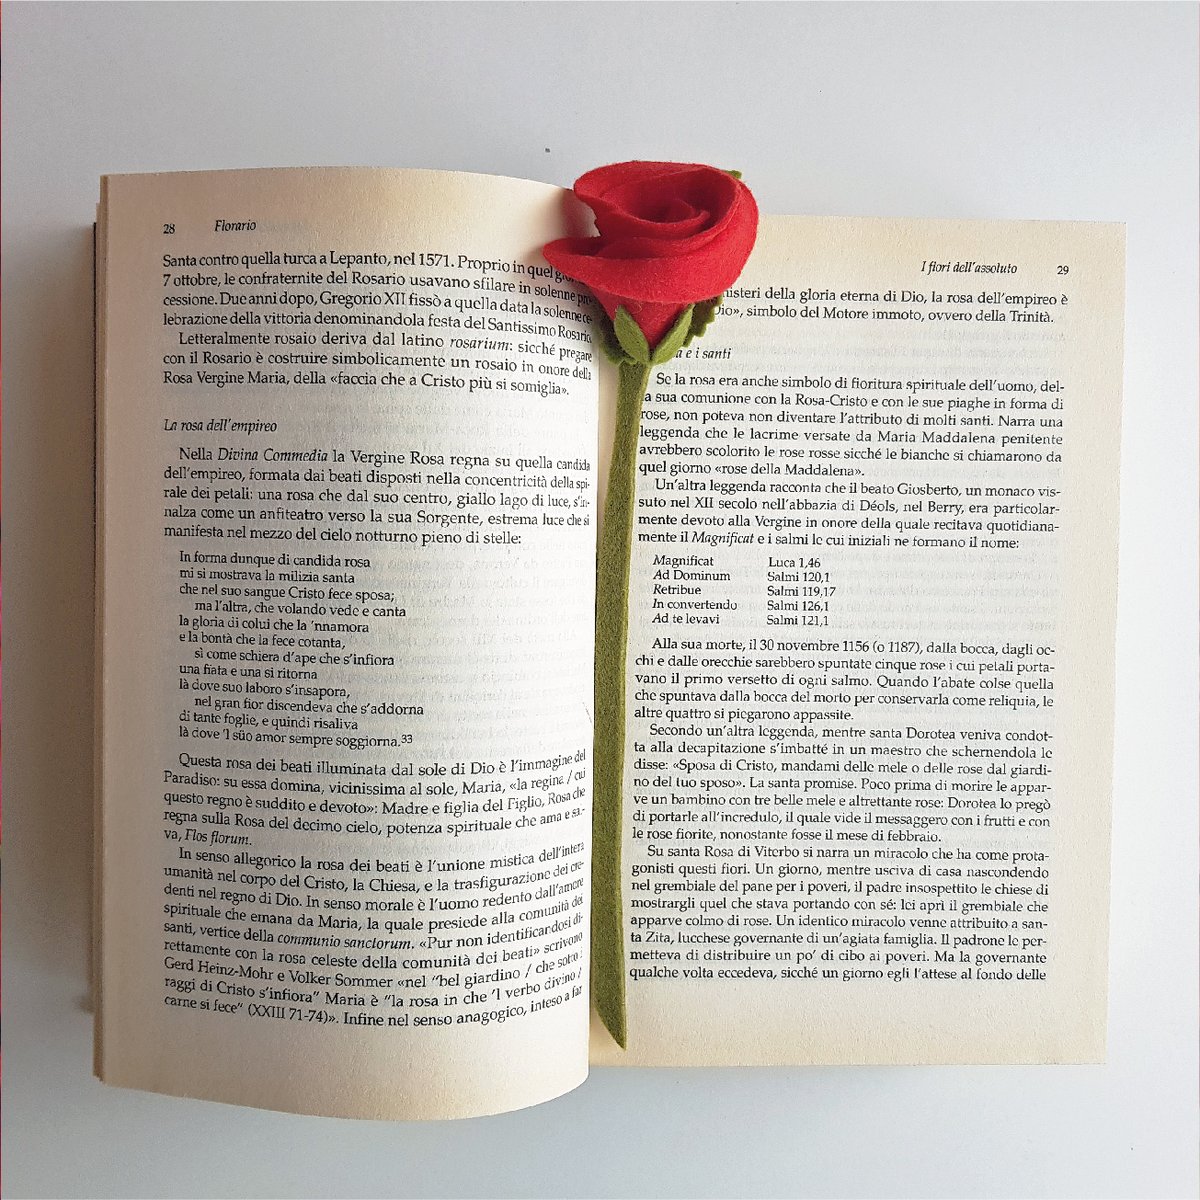 Il 23 aprile in Catalogna si celebra 𝑺𝒂𝒏𝒕 𝑱𝒐𝒓𝒅𝒊 e le coppie si scambiano regali: la tradizione vuole che gli uomini ricevano un libro e le donne una rosa, ma in molti si regalano sia libri che rose. #ilfiorepoeta #SantJordi #SantJordi21 #cultura #romanticismo #rosarossa